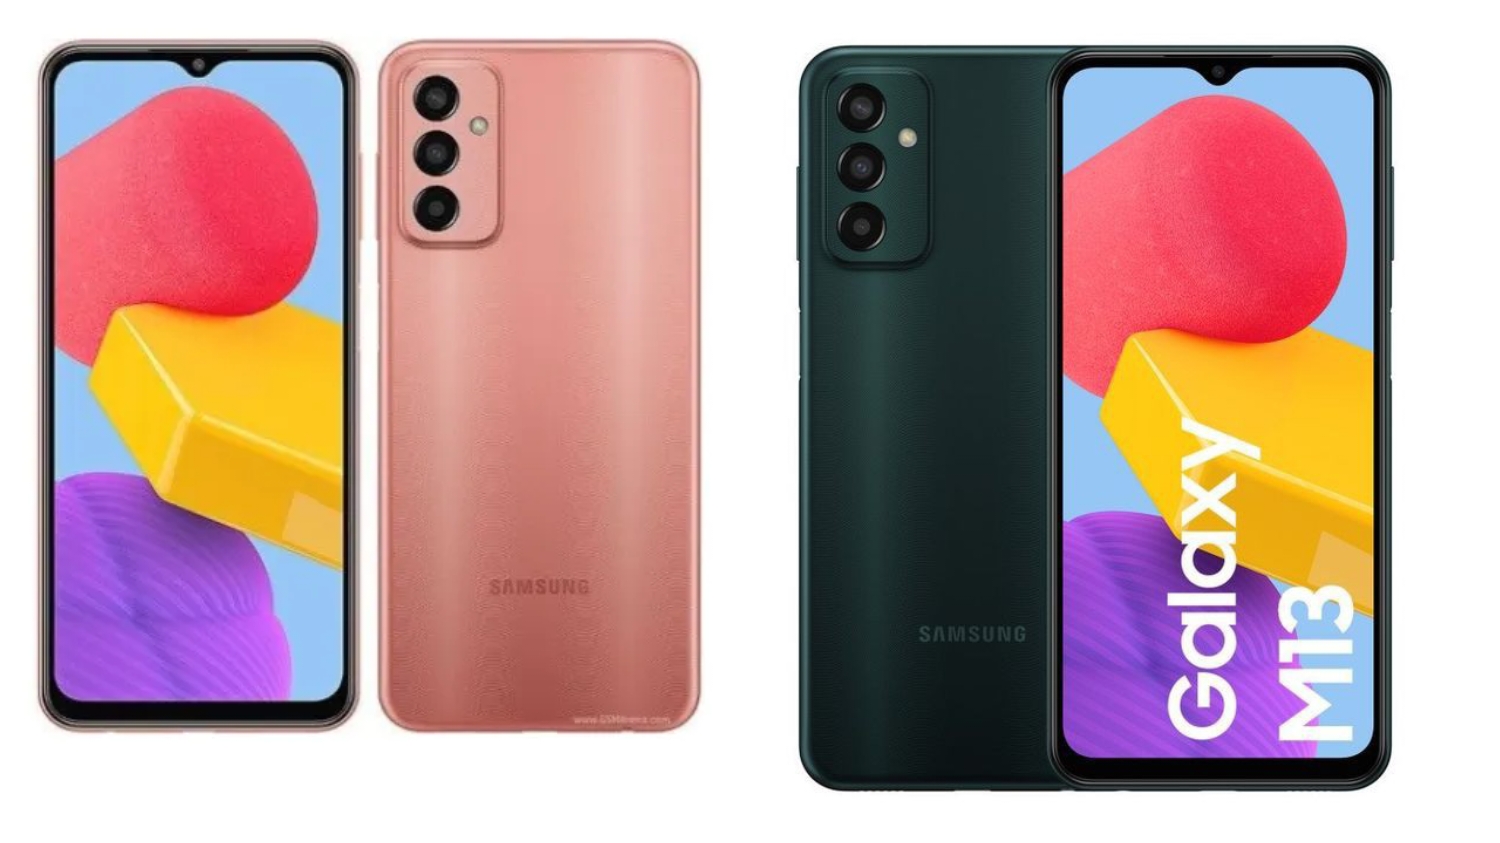 Samsung Galaxy M13, Smartphone Kelas Menengah Performa Solid Ditenagai Chipset Exynos 850 dan Desain Elegan